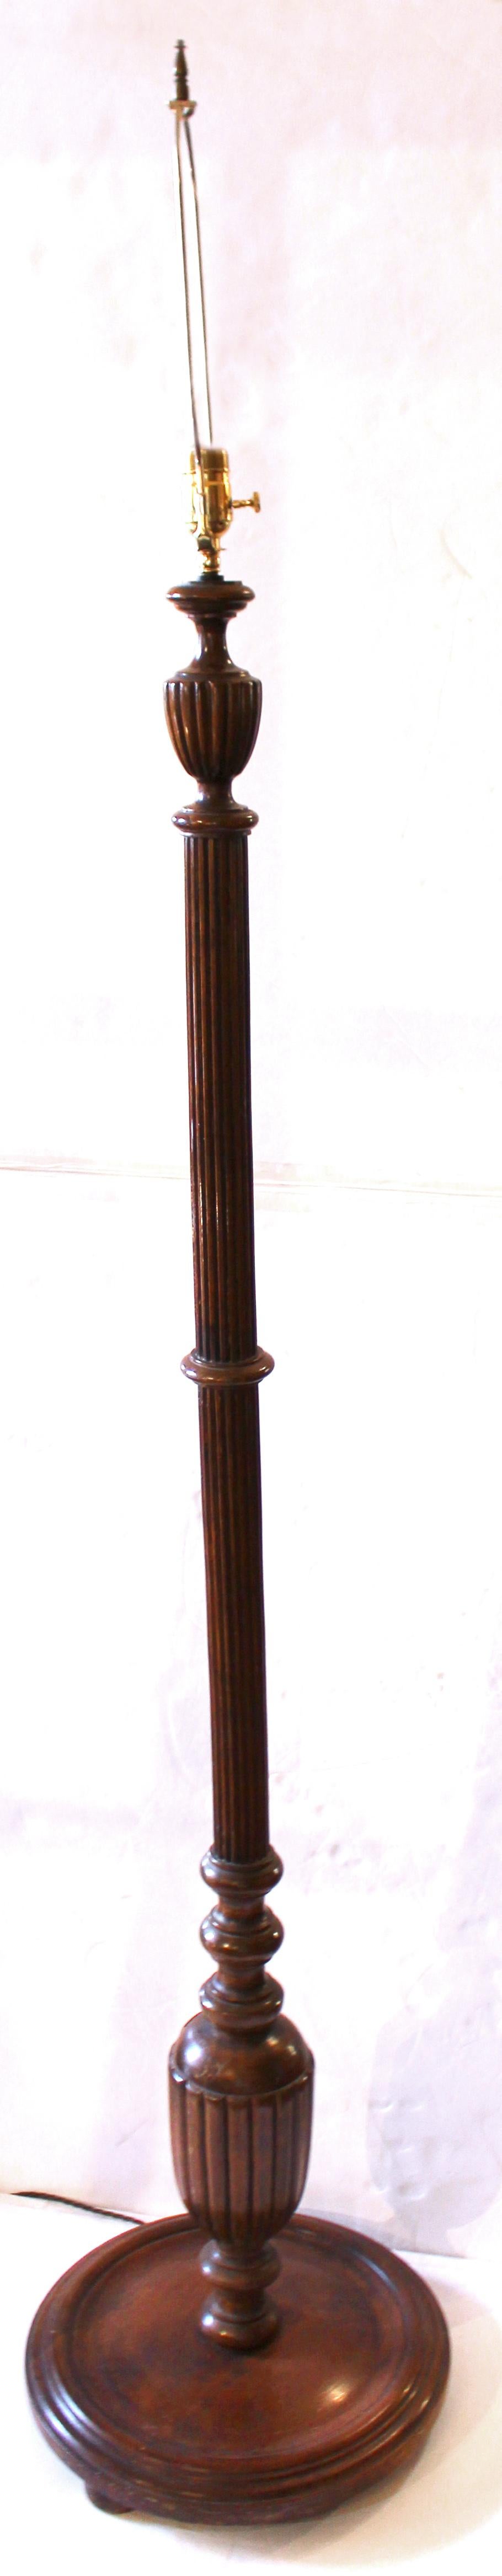 Stehlampe aus geschnitztem Holz, frühes 20. Jahrhundert, englisch. Wahrscheinlich aus einem viel älteren Bettpfosten oder einer Fackel hergestellt. Mahagoni. Der Schaft ist gut geriffelt und endet in einer bauchigen Verdrehung und einem Scheibenfuß.